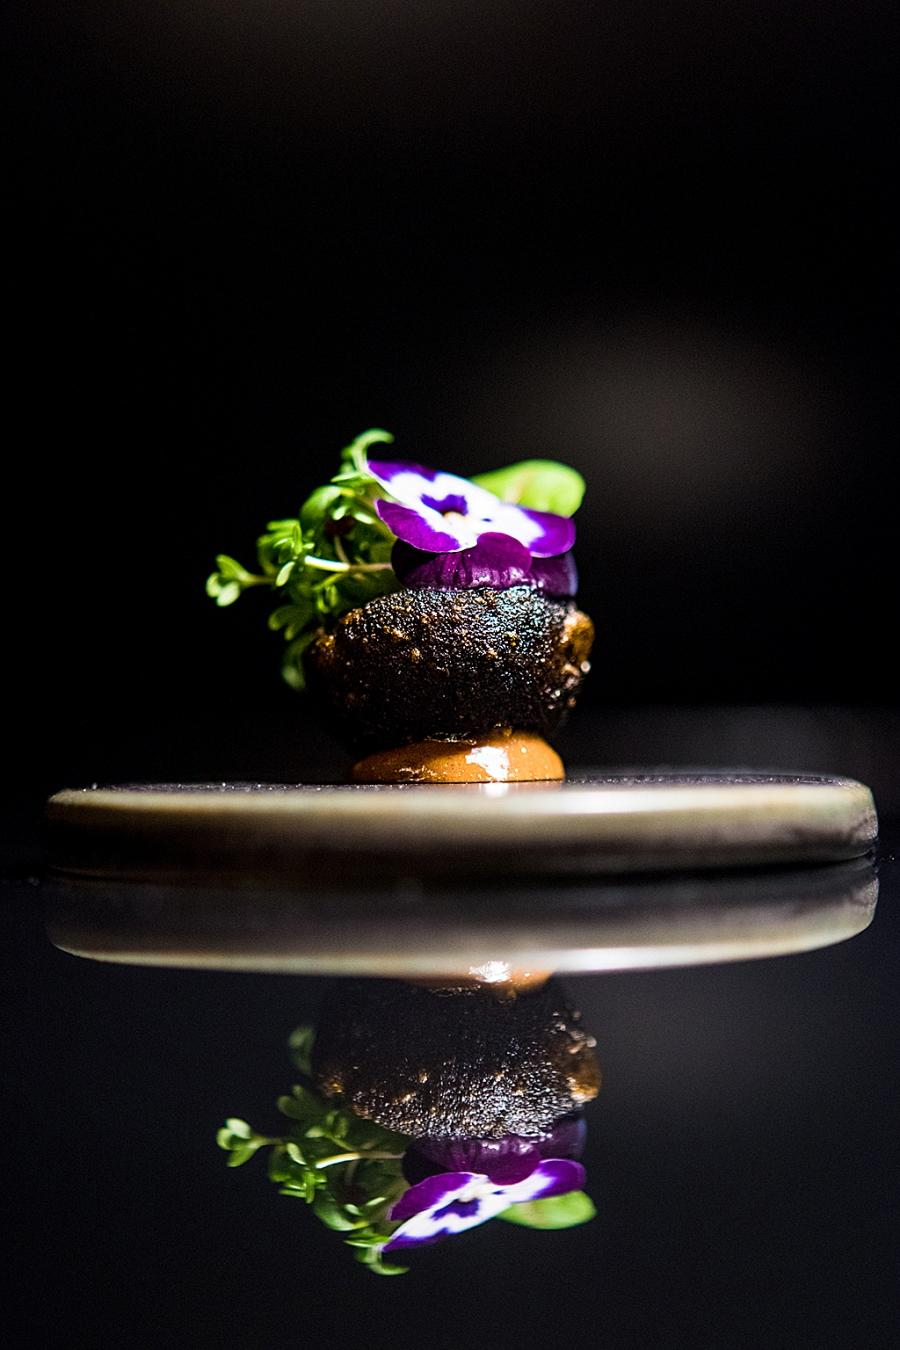 Batata com alho negro, um florido canteiro de sabor intenso, no capítulo de snacks do menu Terra, do Feitoria (Gonçalo Villaverde/GI)